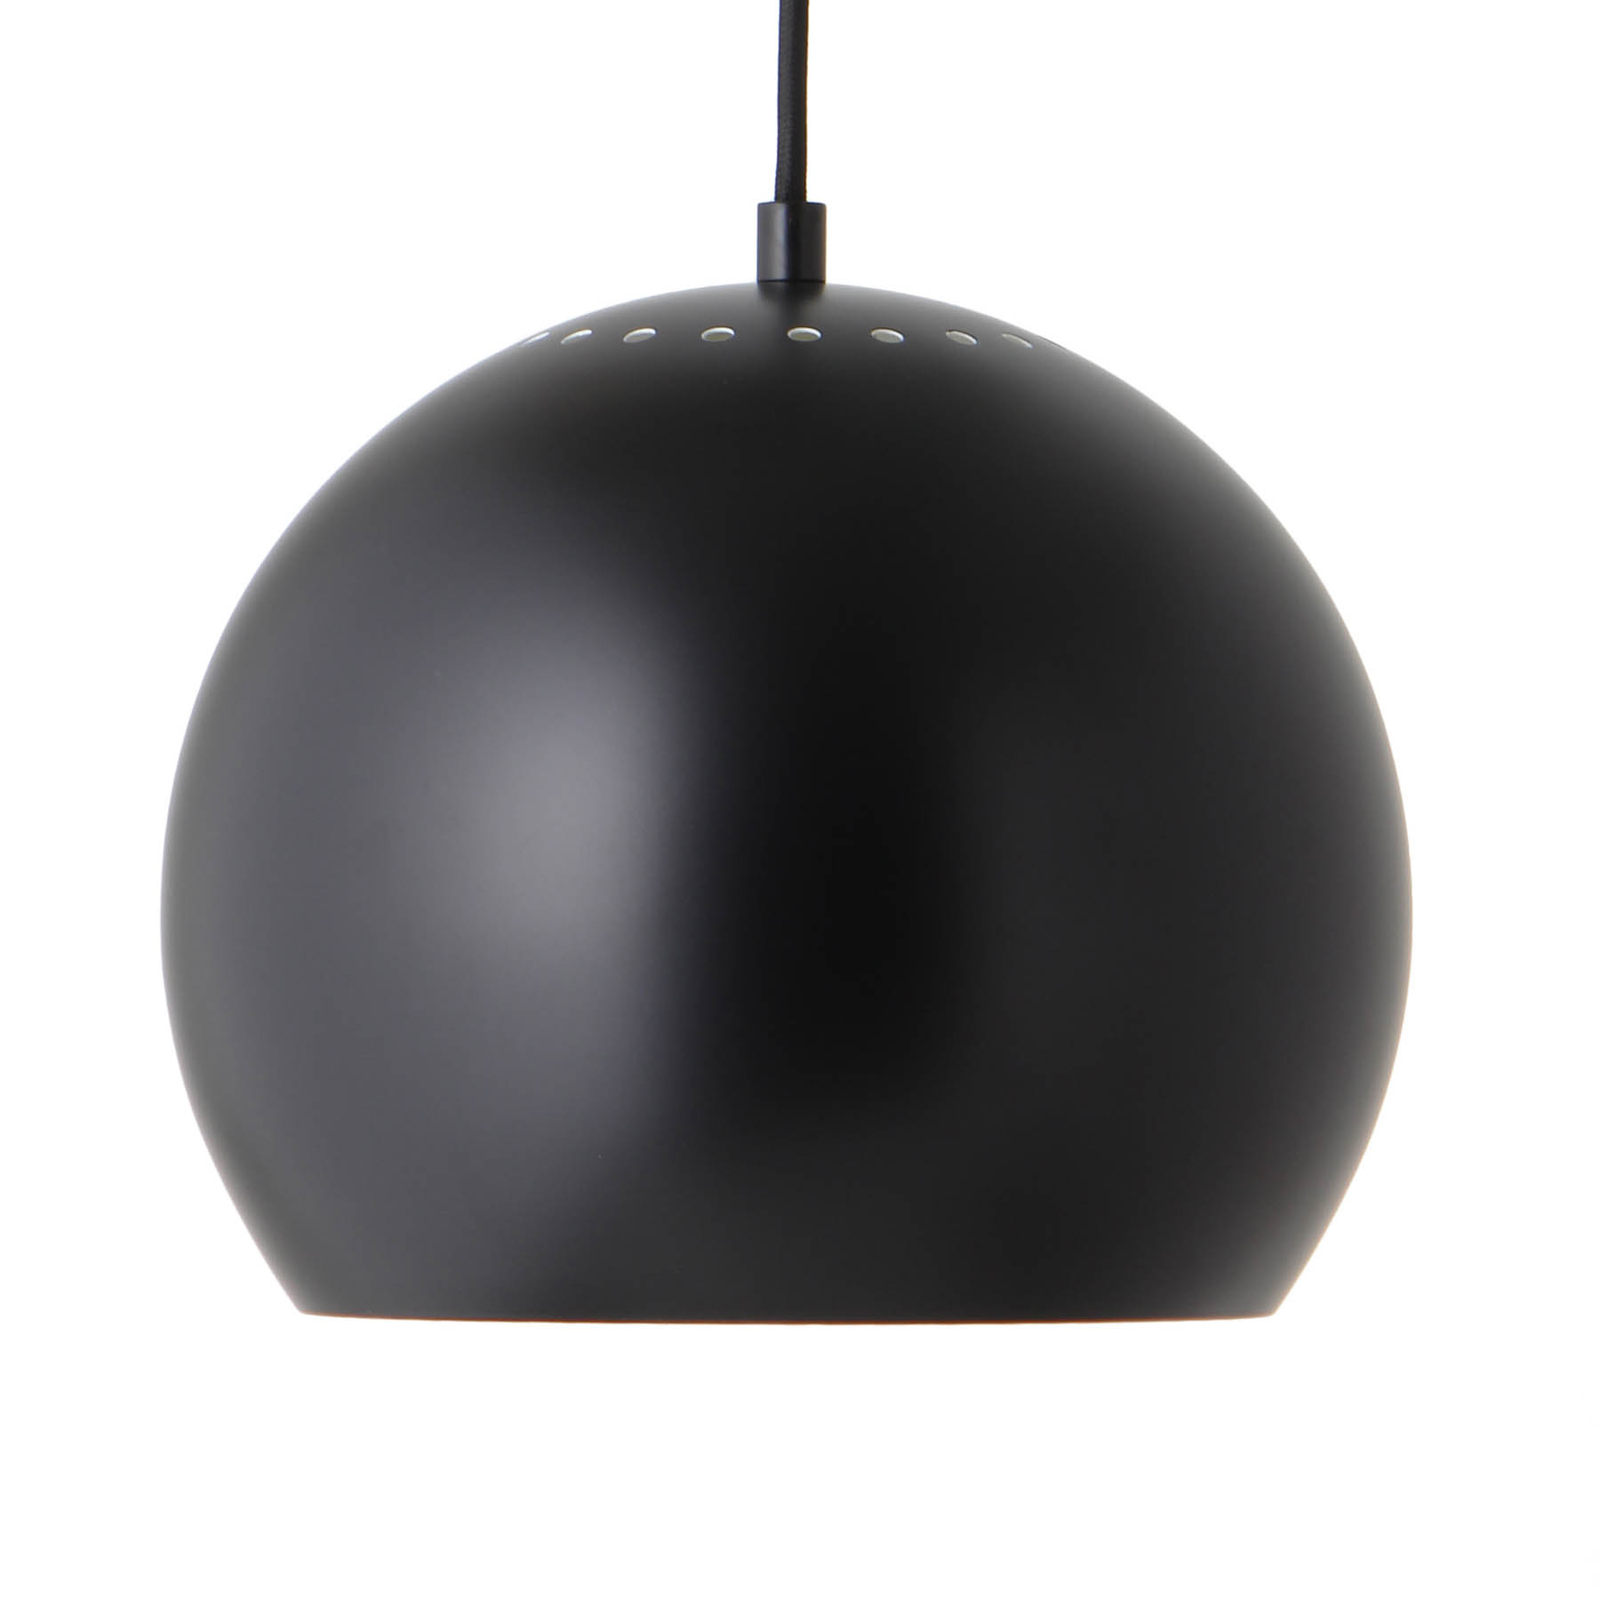 FRANDSEN Ball hanglamp, Ø 25 cm, mat zwart